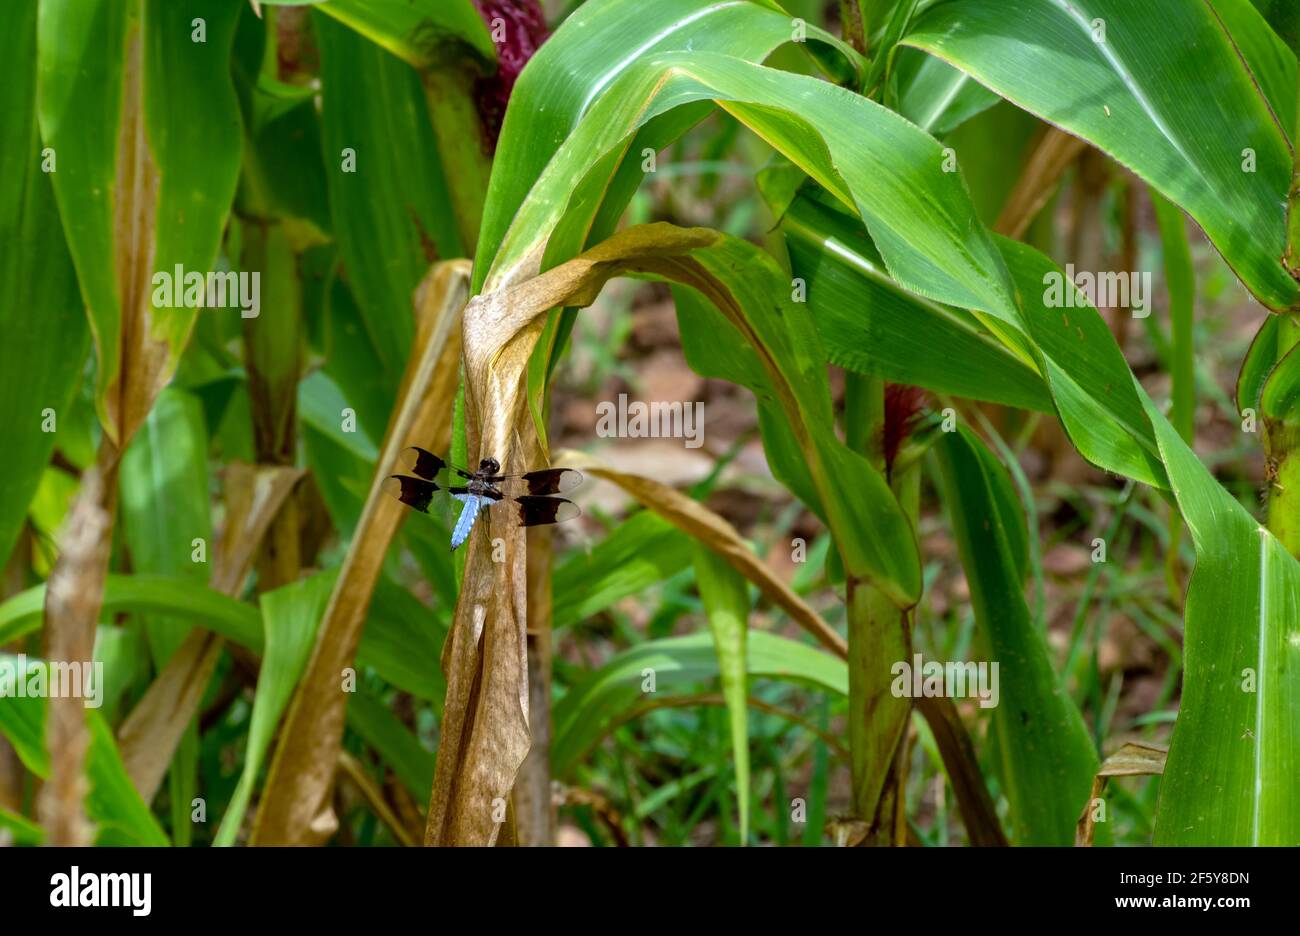 Une libellule à la calete blanche commune a trouvé des tiges de maïs dans le jardin du Missouri pour être un endroit agréable de repos. Effet bokeh. Banque D'Images